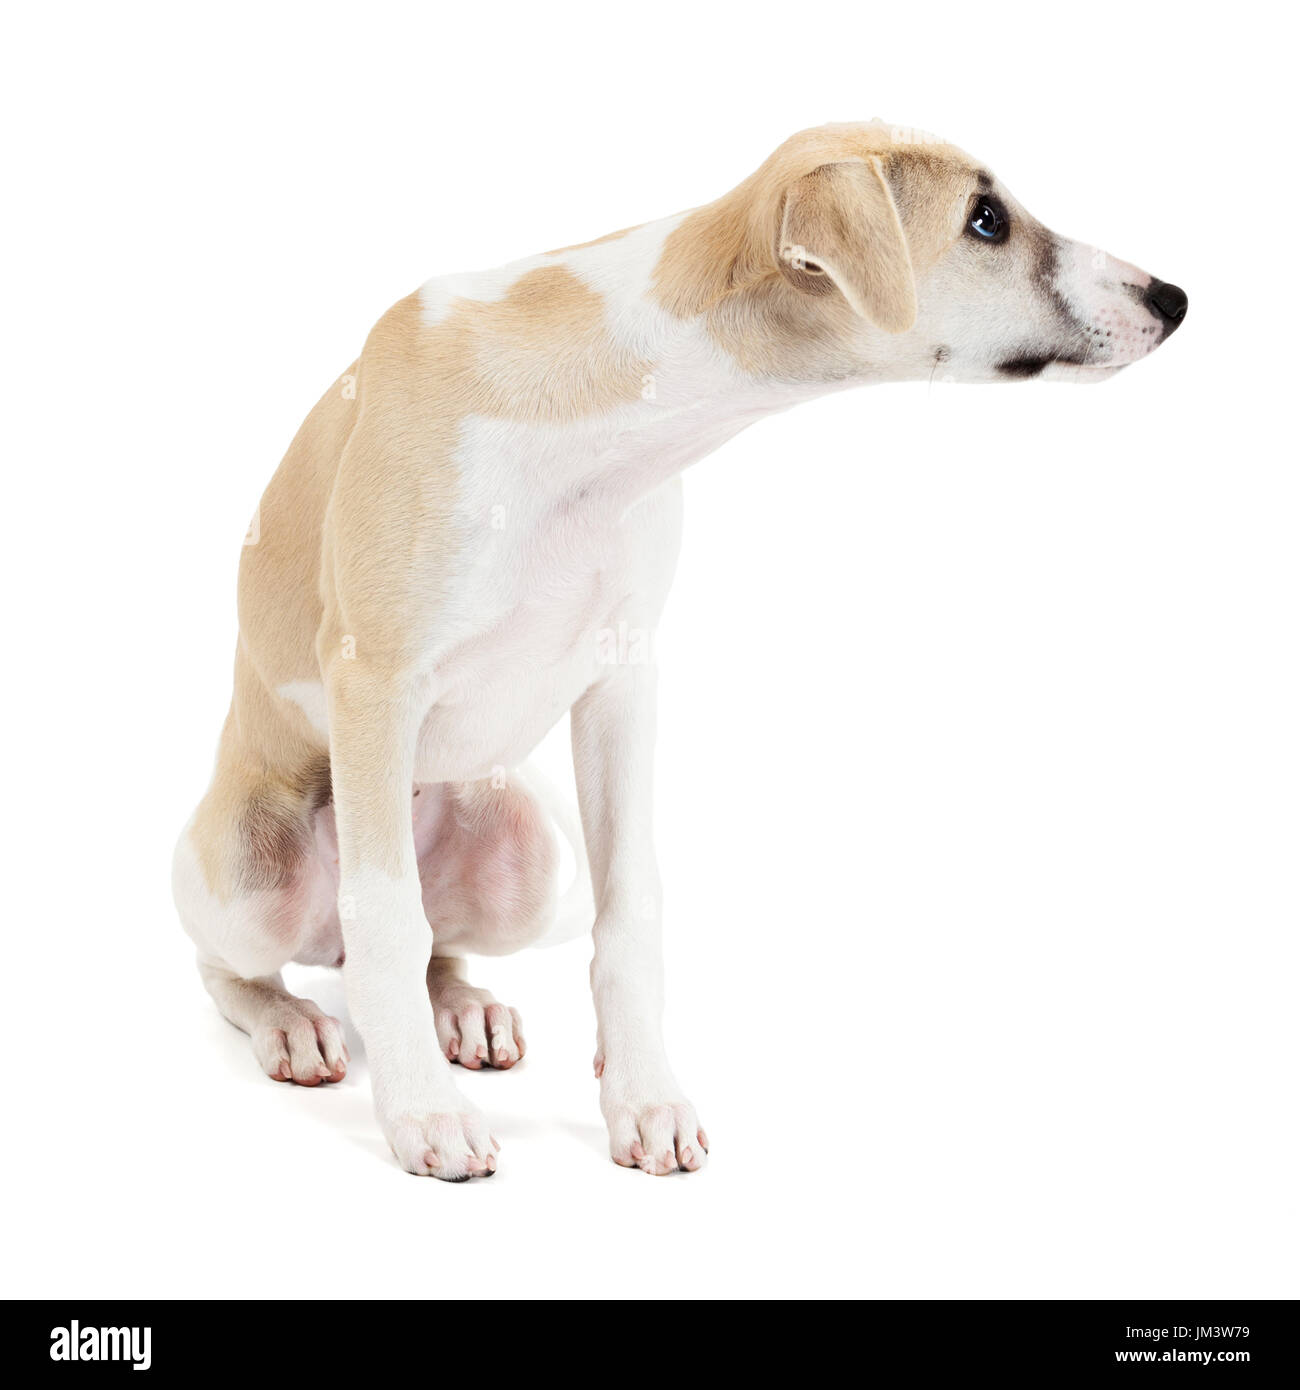 Curioso carino whippet cucciolo di cane seduto isolato su sfondo bianco Foto Stock